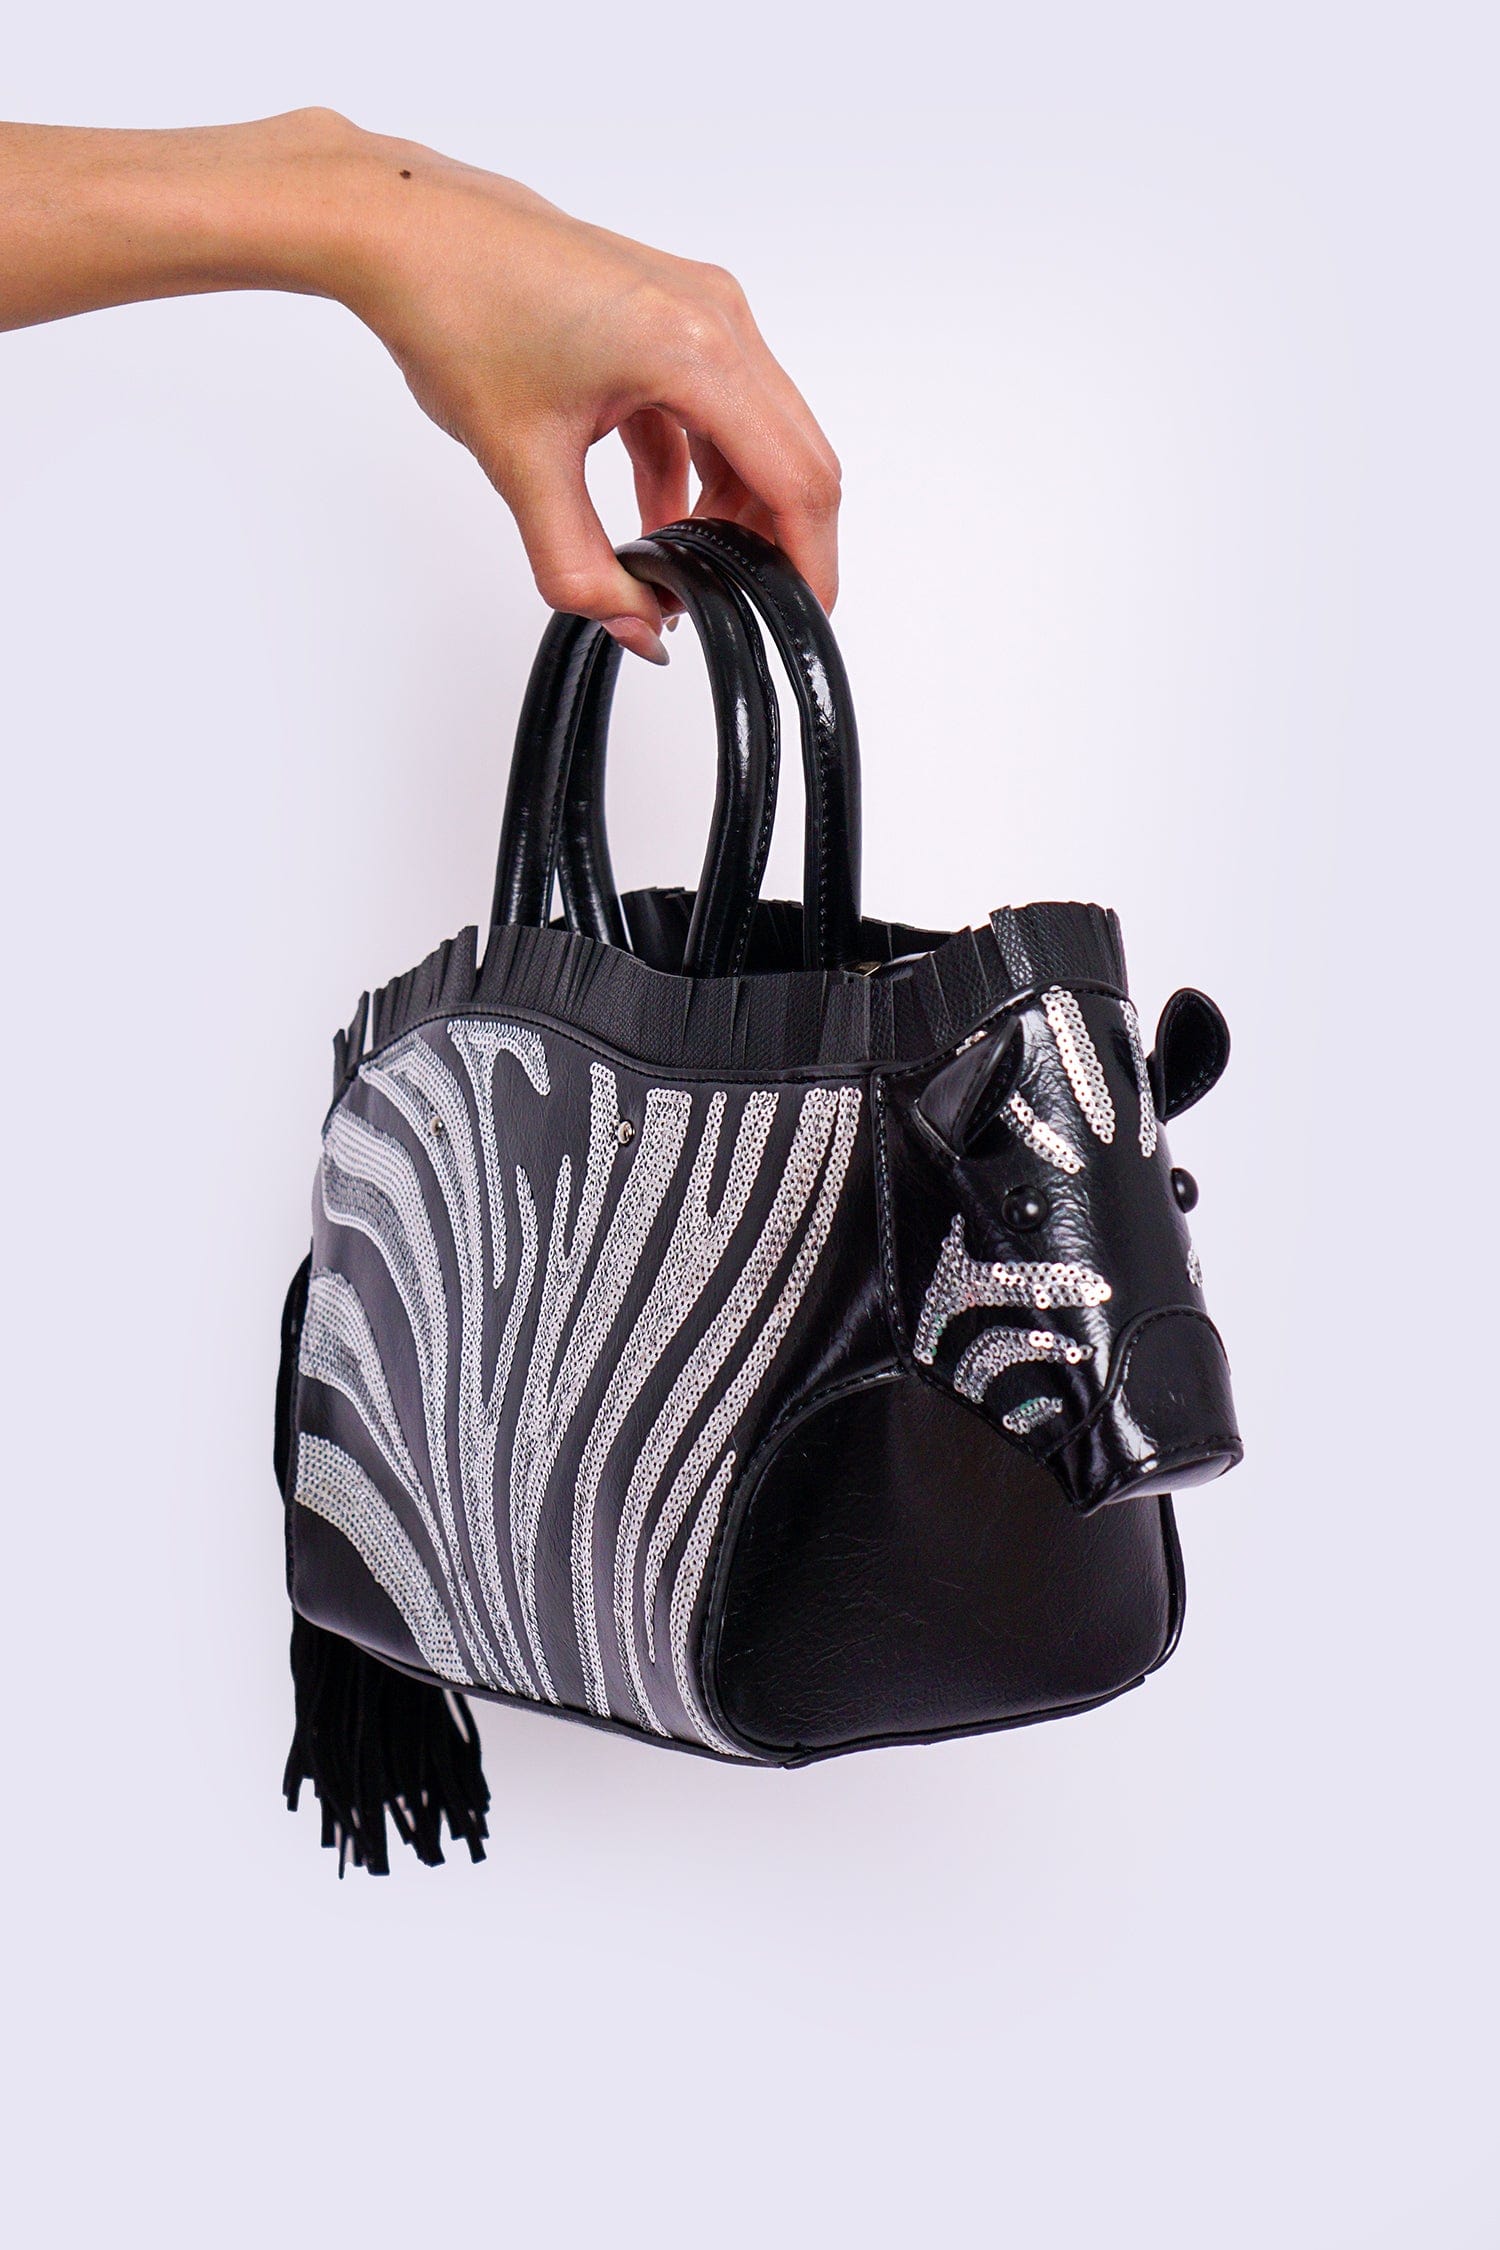 DCD HANDBAGS Black White Zebra Bag